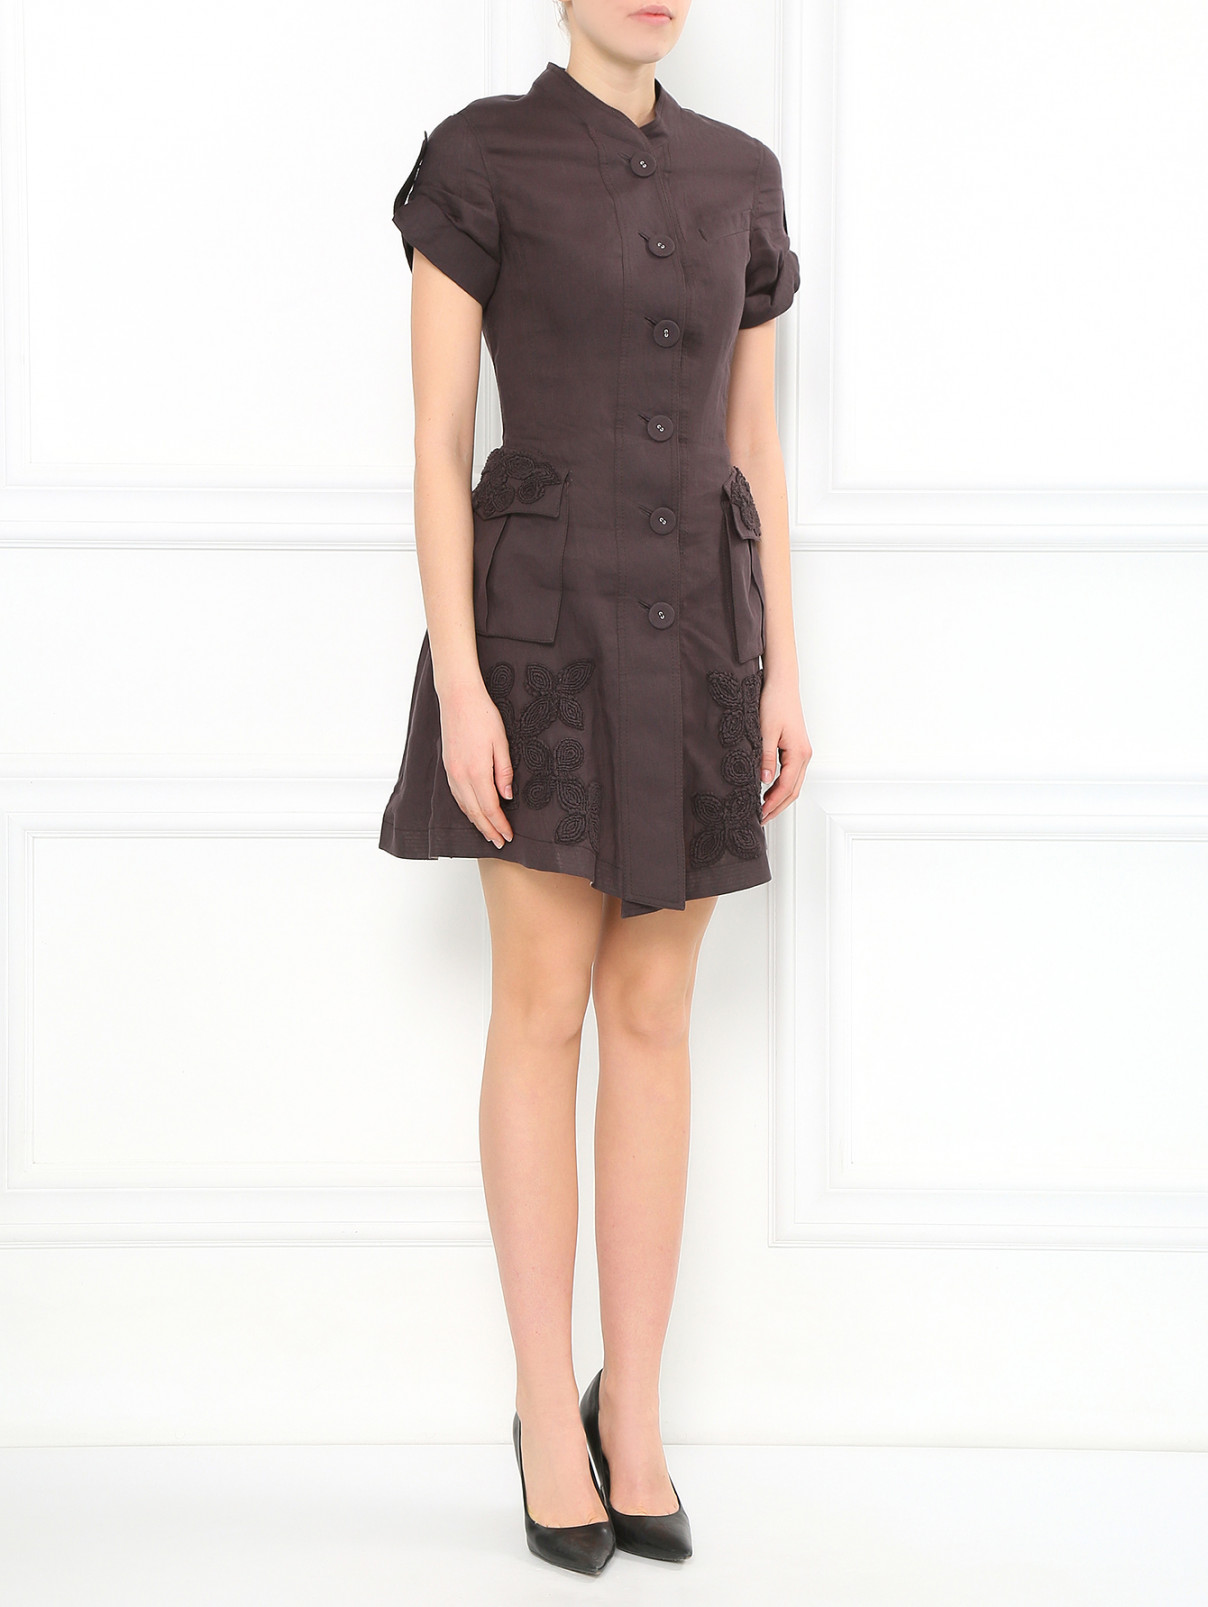 Платье-мини на пуговицах  с вышивкой Jean Paul Gaultier  –  Модель Общий вид  – Цвет:  Коричневый